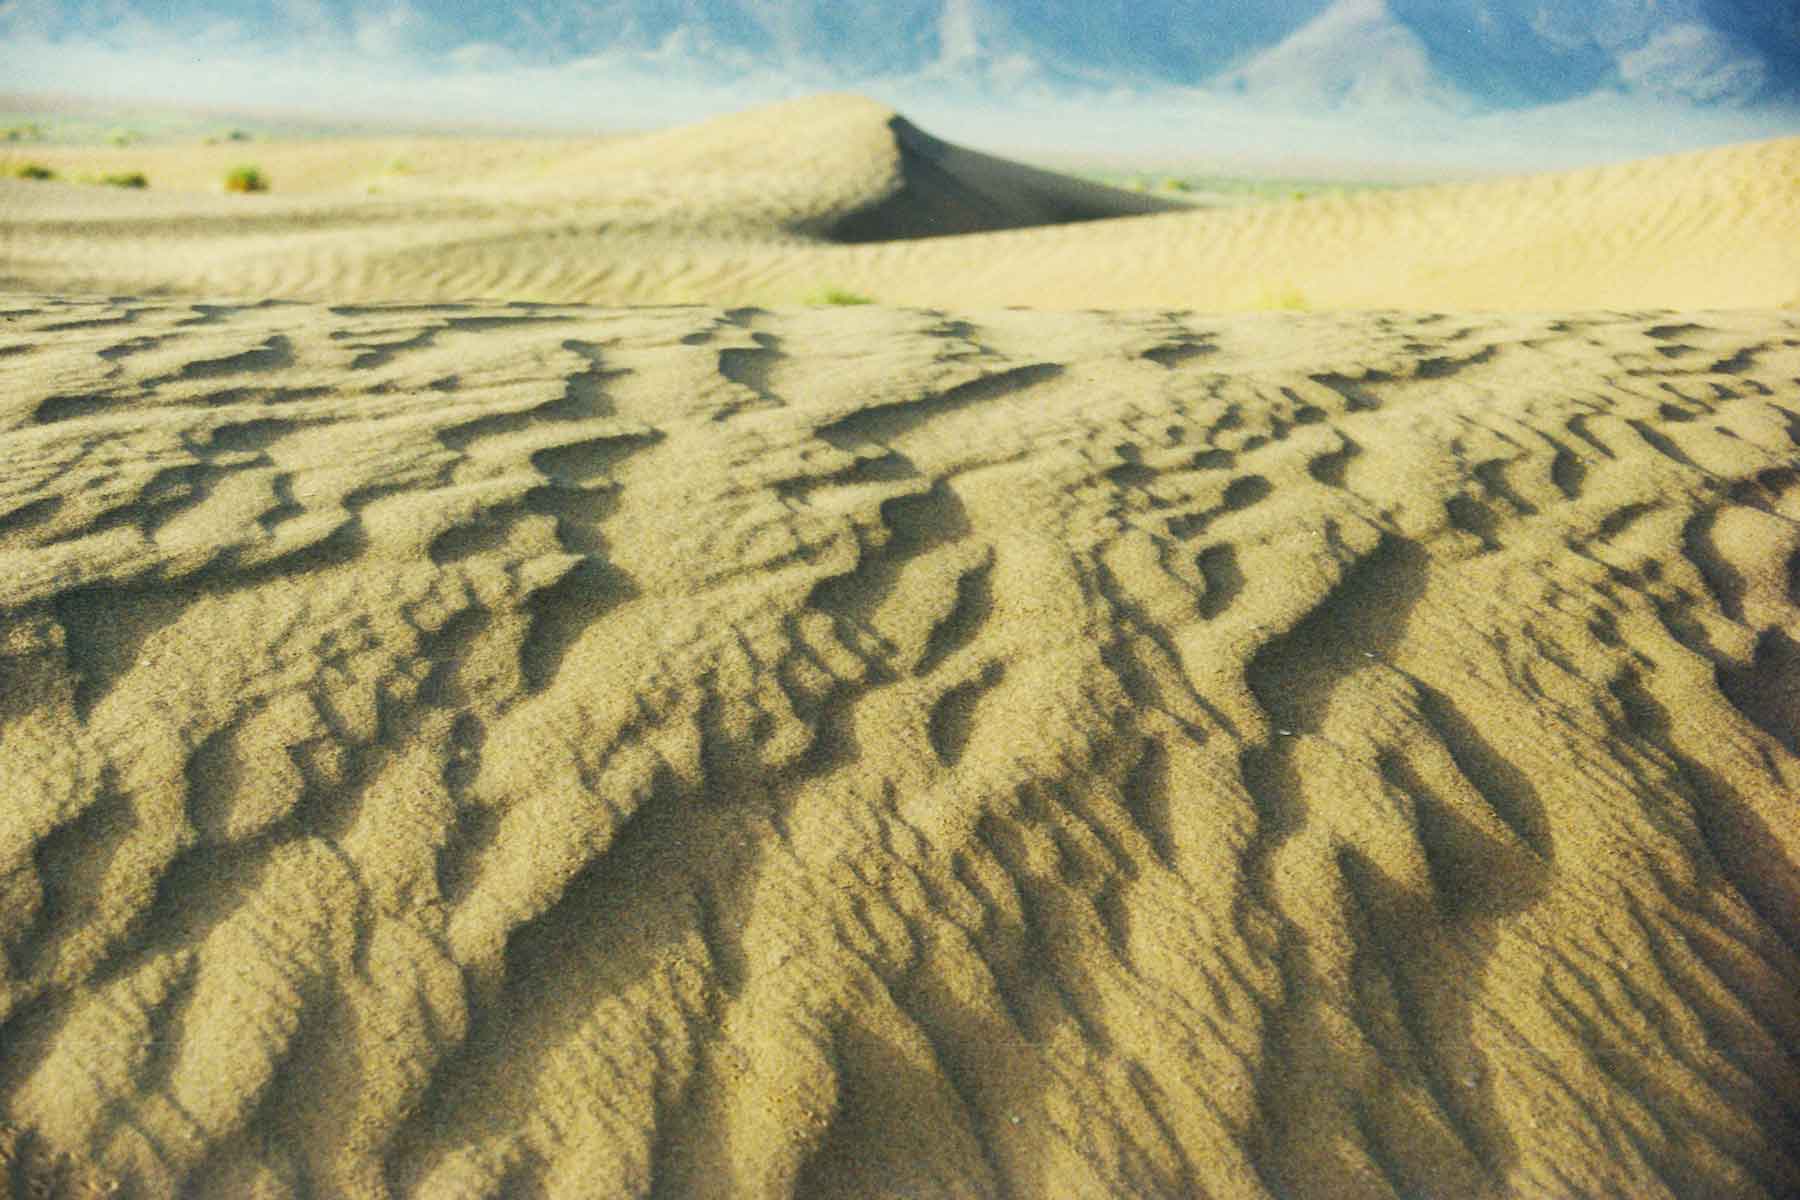 Sahara Desert 1998 - Morocco - Study Abroad - Steven Andrew Martin - Spain Photo Journal